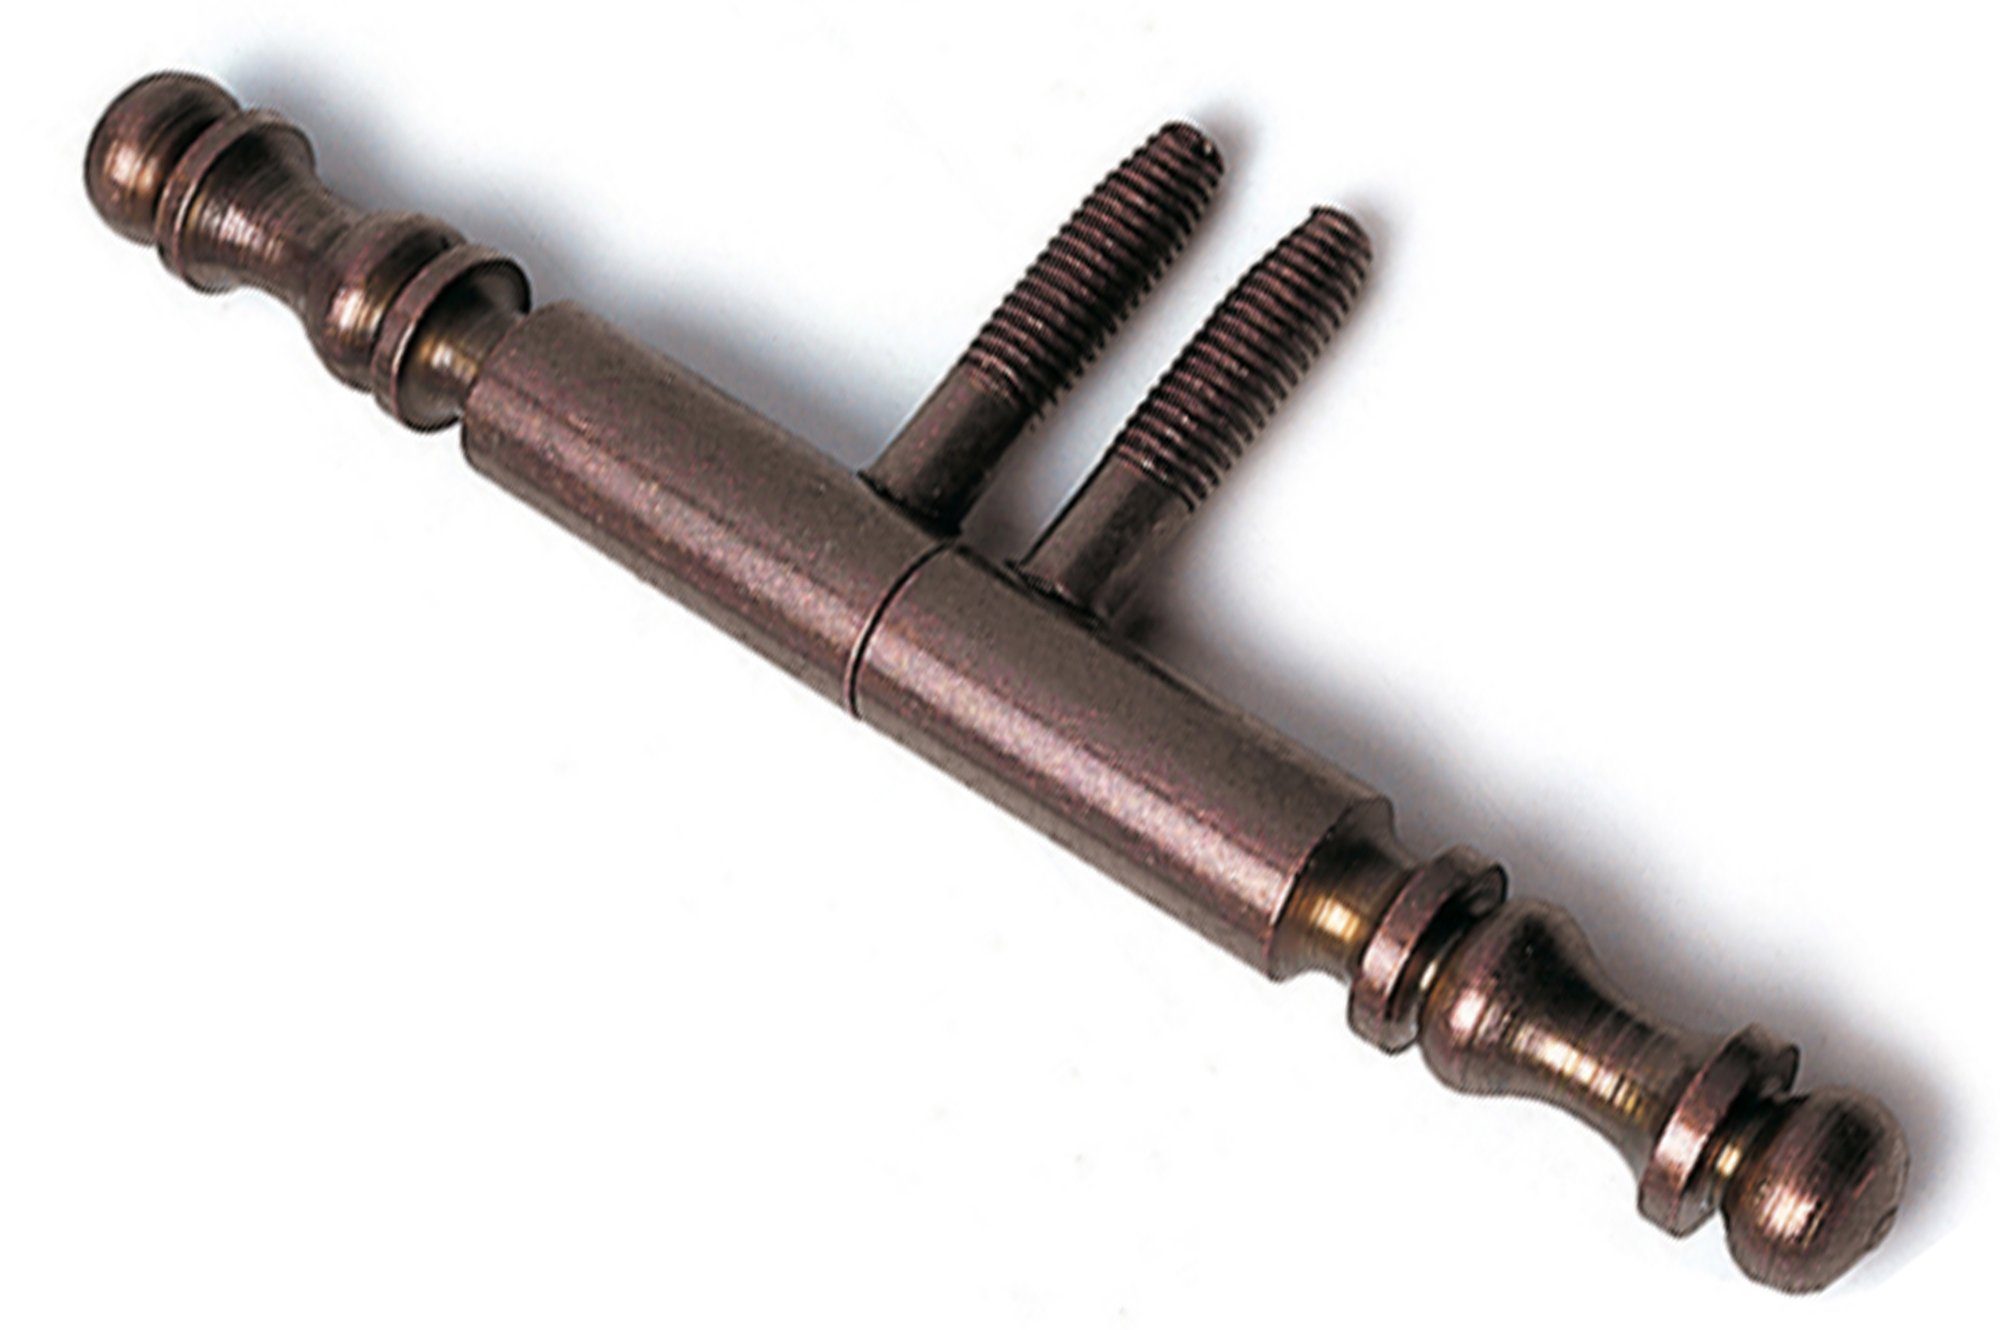 Bronze Tür-Scharnier IHC (2 Scharnier St) Möbelbeschlag Aufschraubband Einbohrbänder Türband